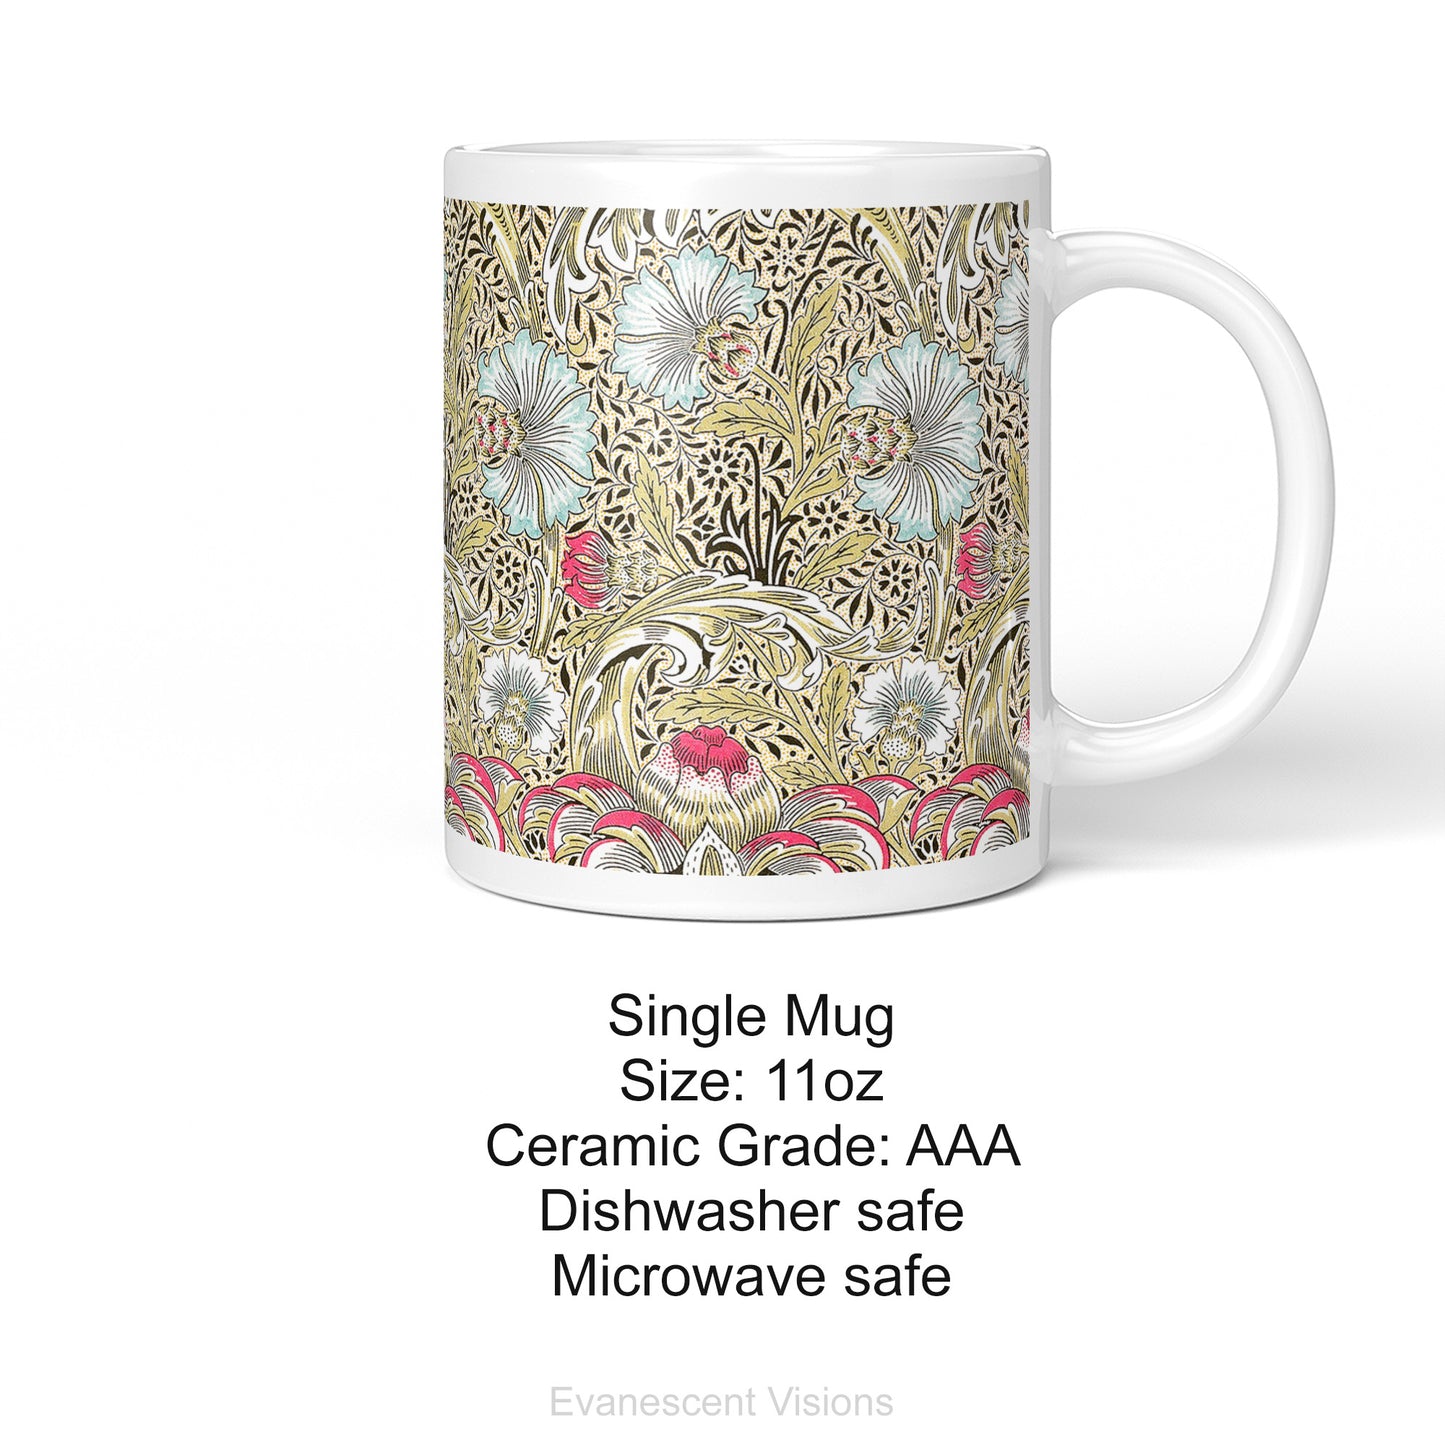 Product details for the William Morris Corncockle Ceramic Art Mug